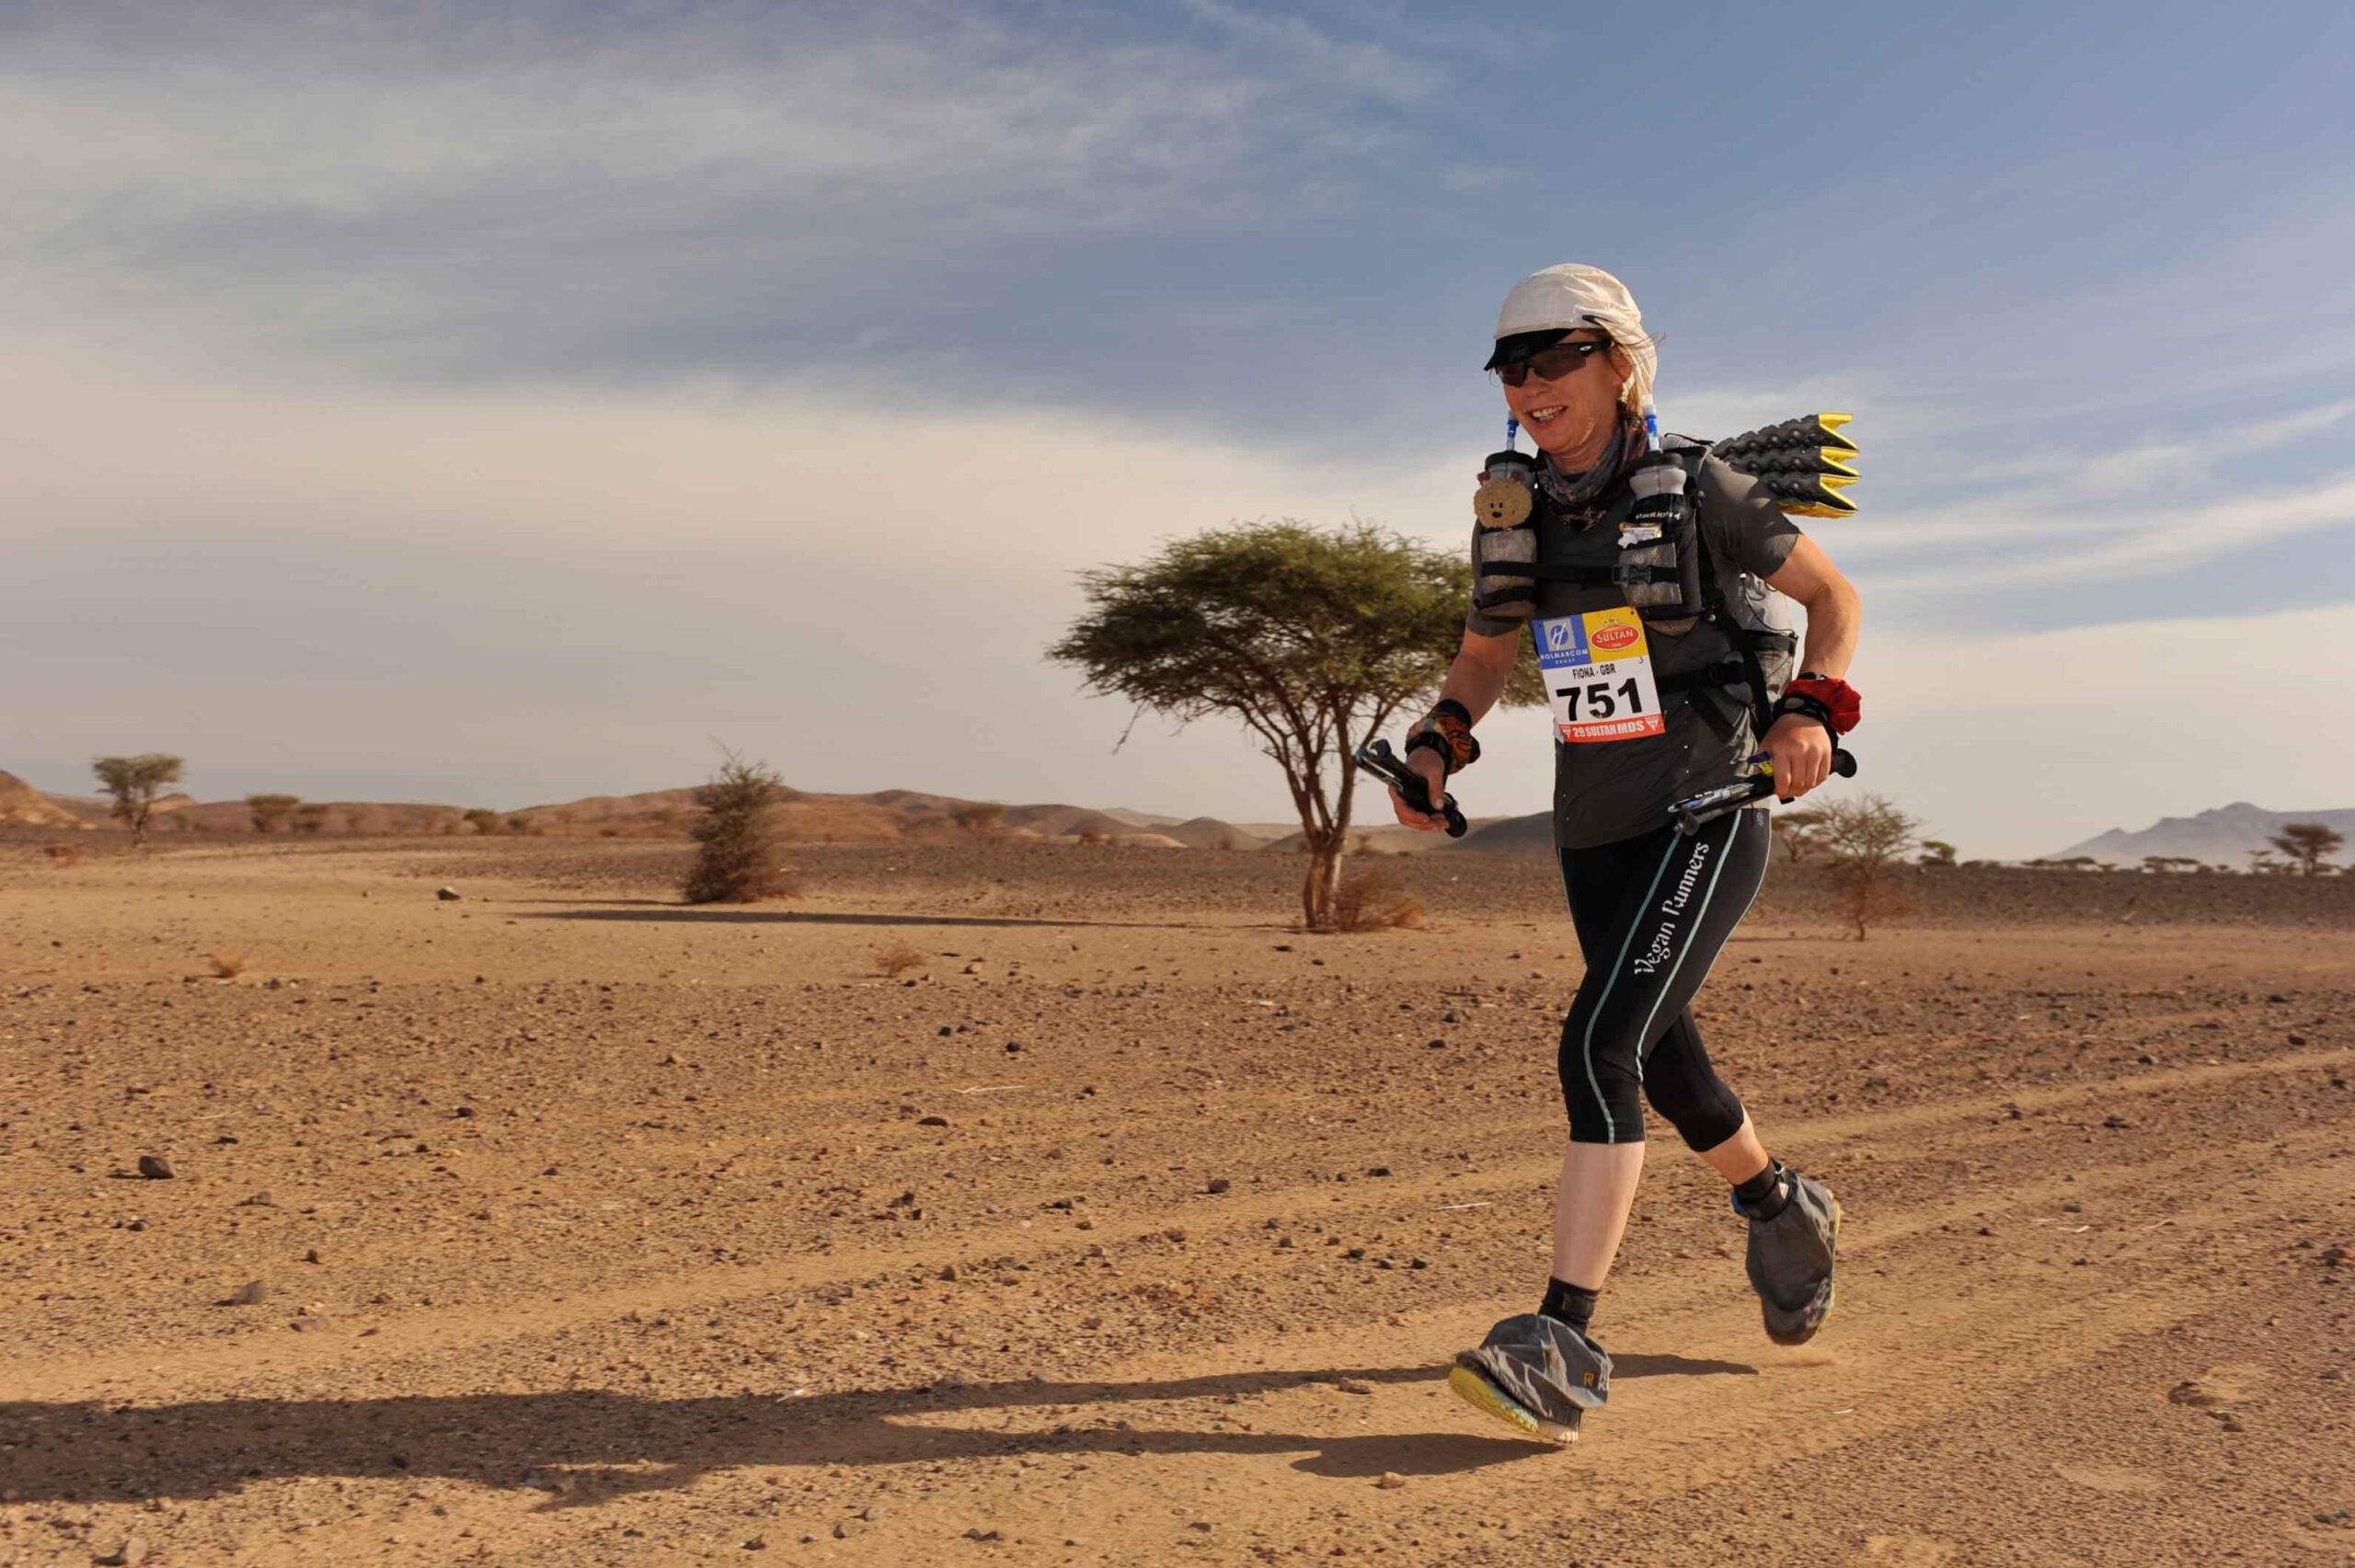 Vegan ultramarathon runner Fiona Oakes runs across the Sahara desert, smiling